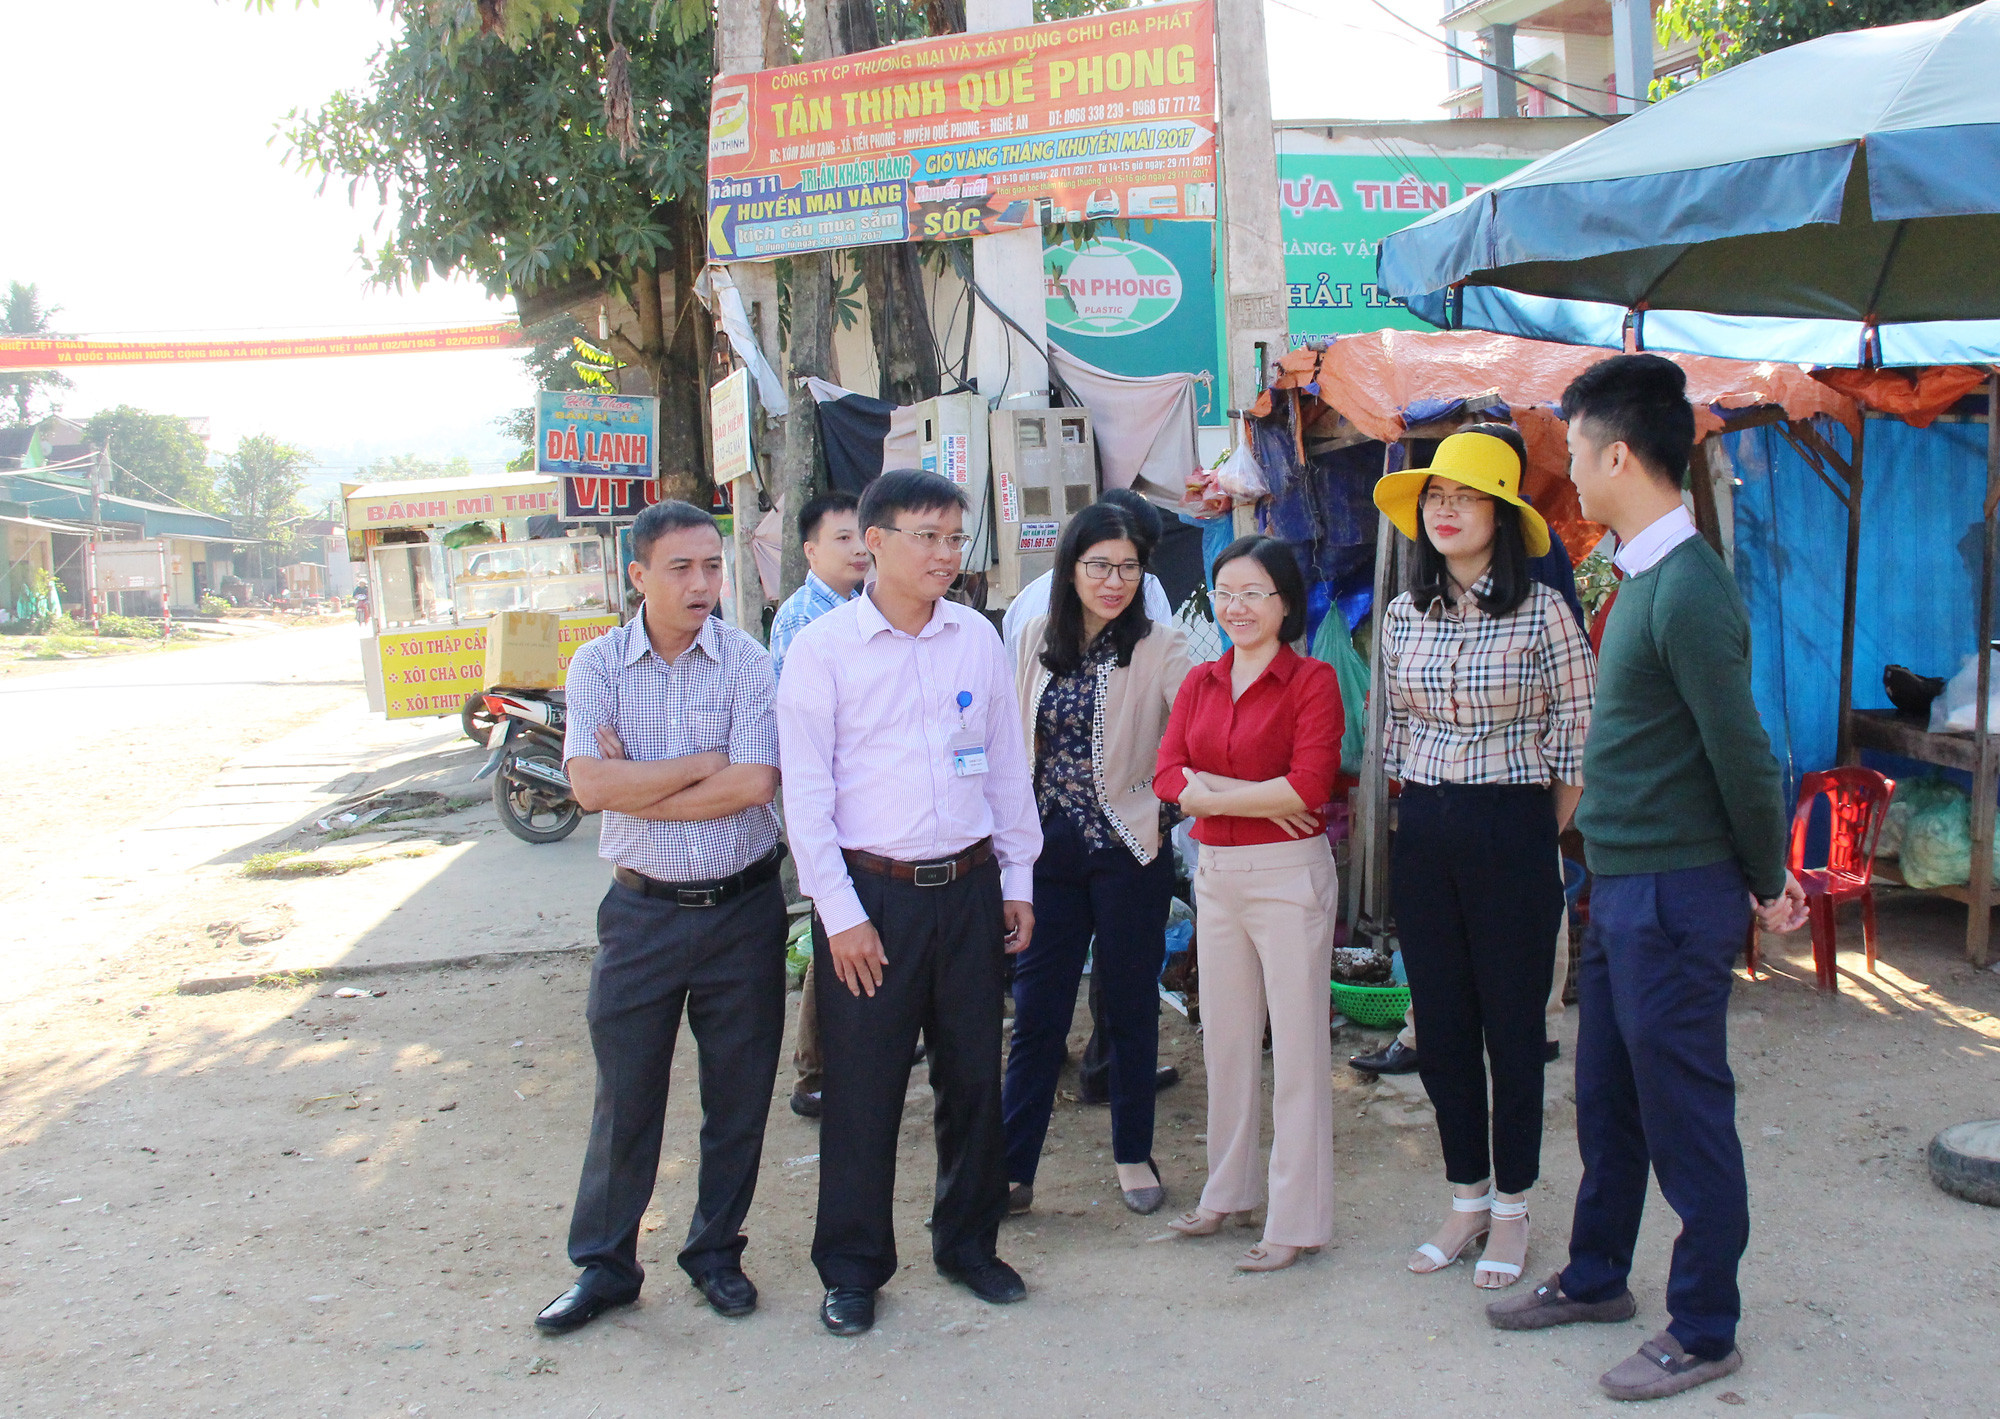 Đoàn khảo sát tại khu vực ngã 3 Phú Phương, nơi thường có hoạt động chợ và dừng, đỗ các phương tiện giao thôn, gây ách tắc và nguy cơ mất an toàn giao thông. Ảnh: Minh Chi